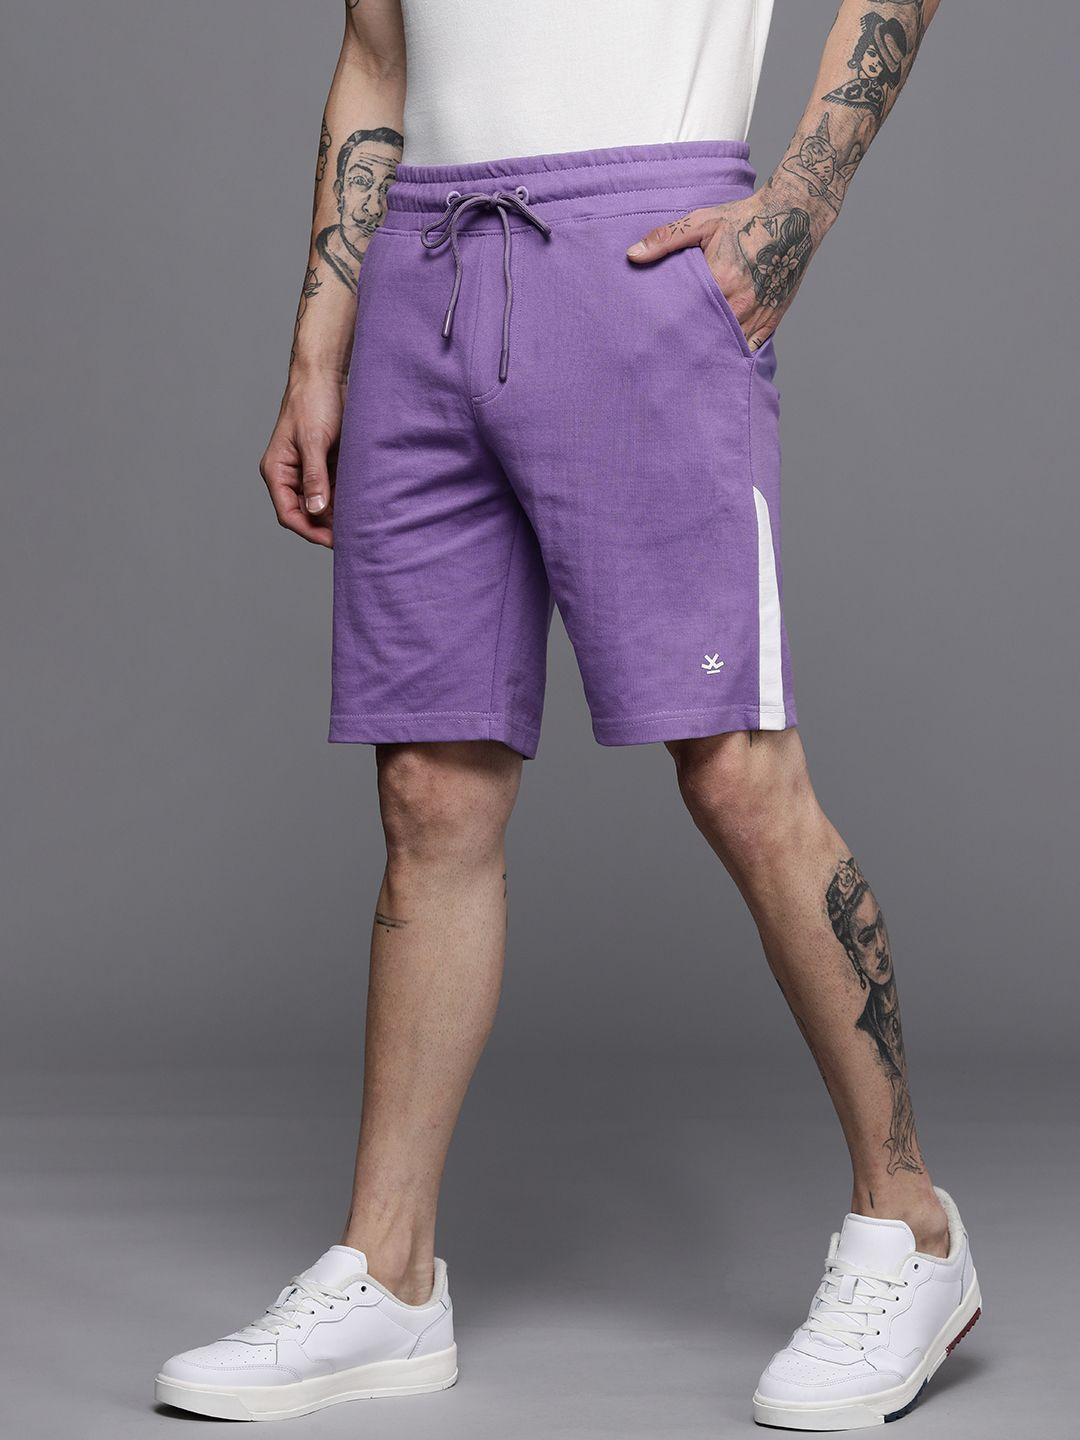 wrogn-men-purple-shorts